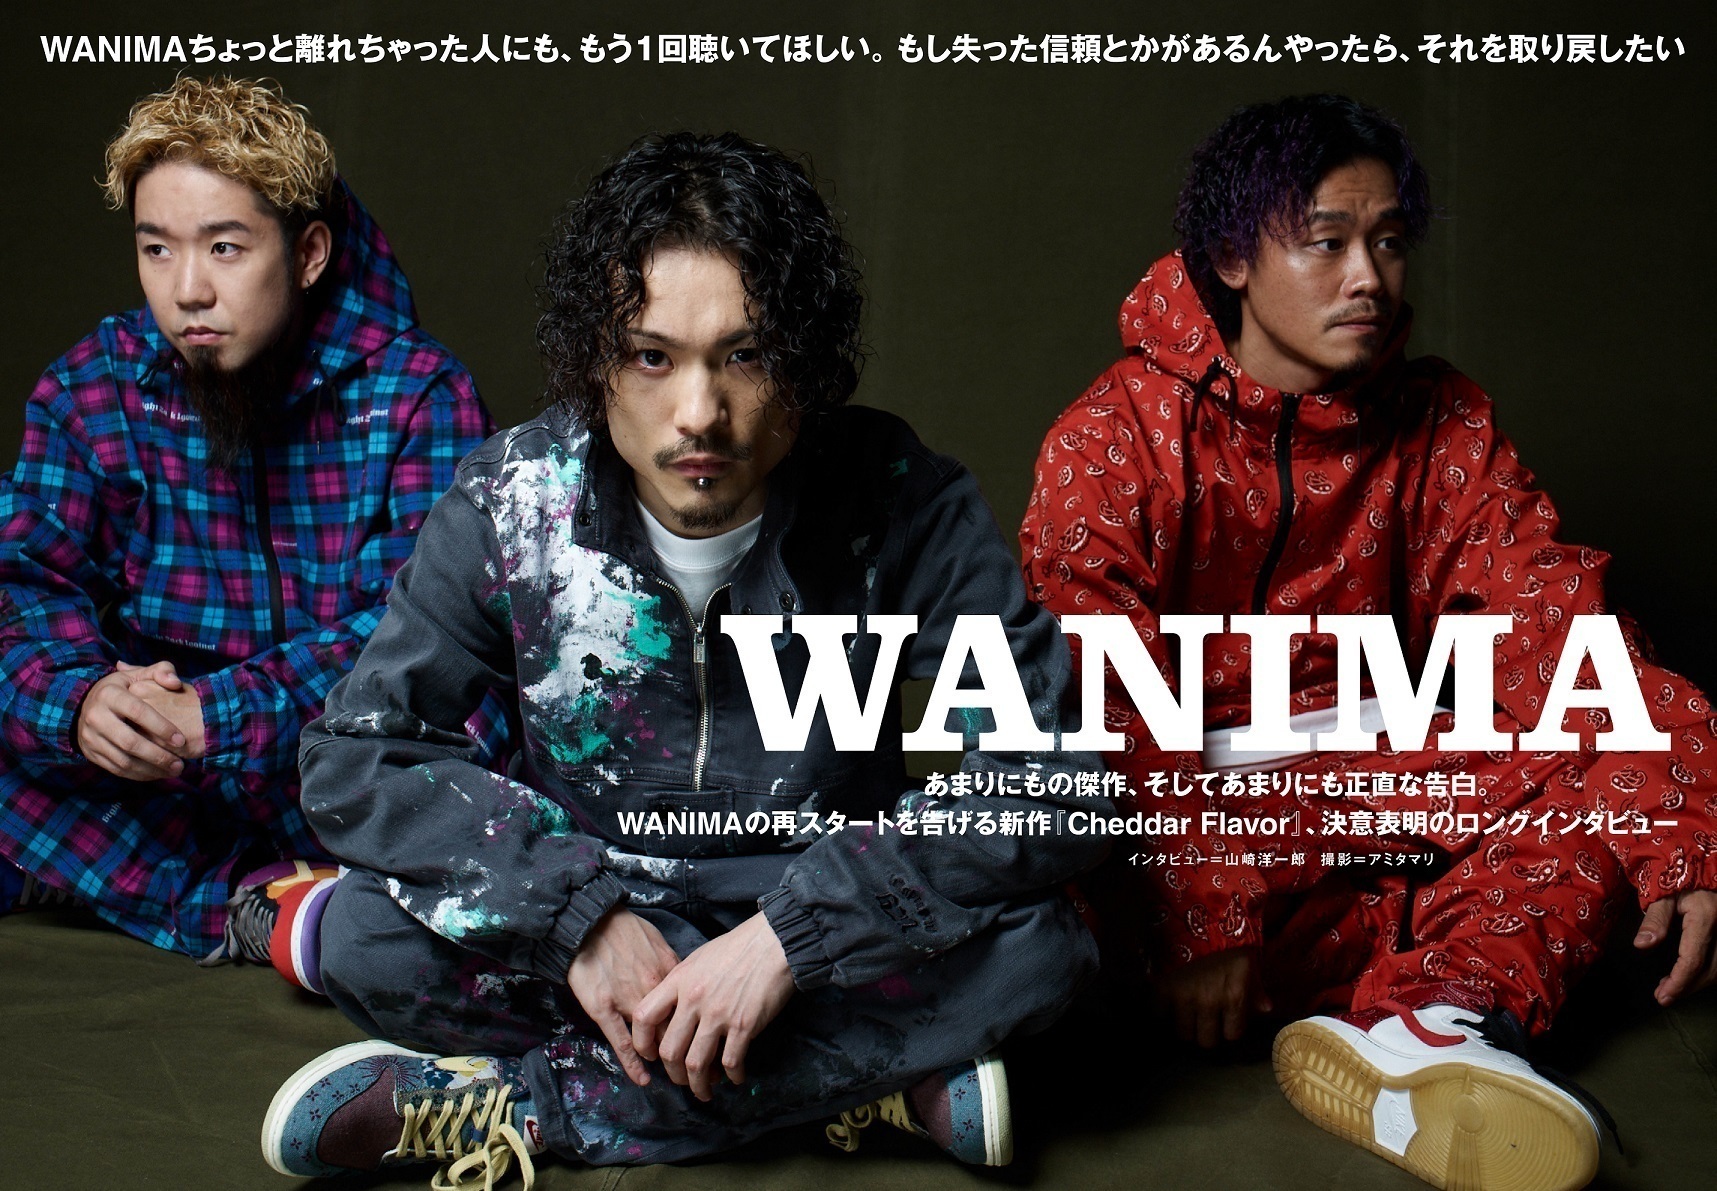 【JAPAN最新号】WANIMA、再スタートを告げる新作『Cheddar Flavor』、決意表明のロングインタビュー